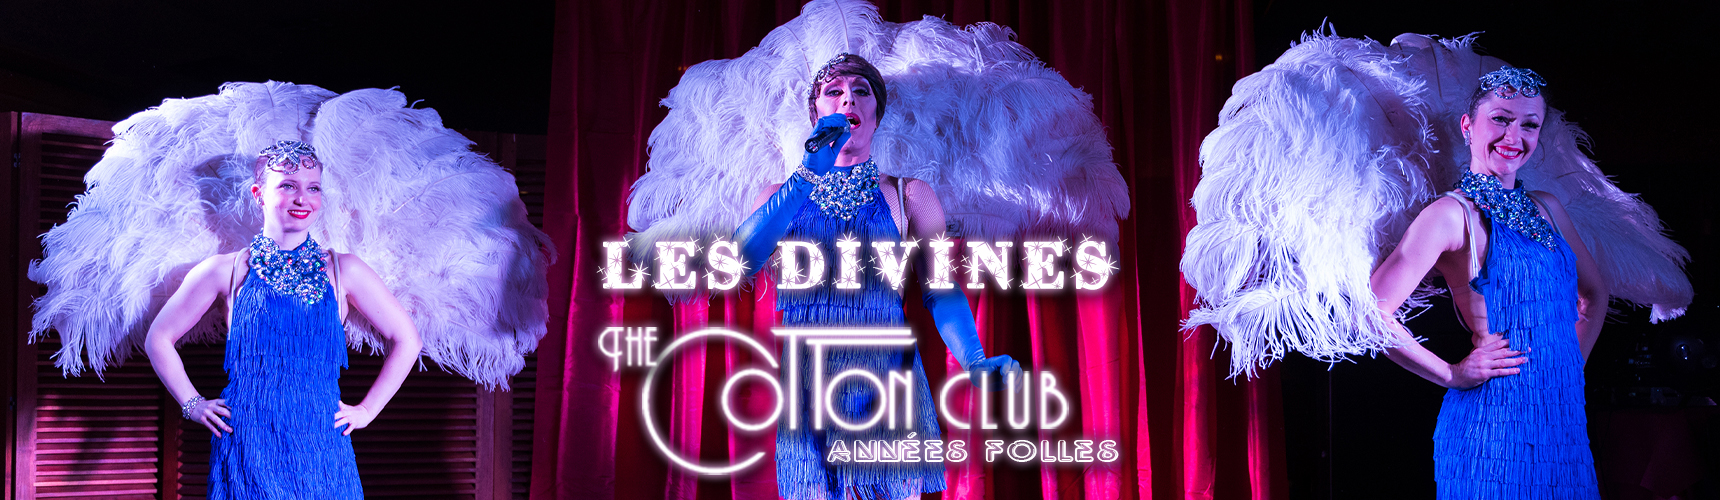 Les Divines – Cotton Club